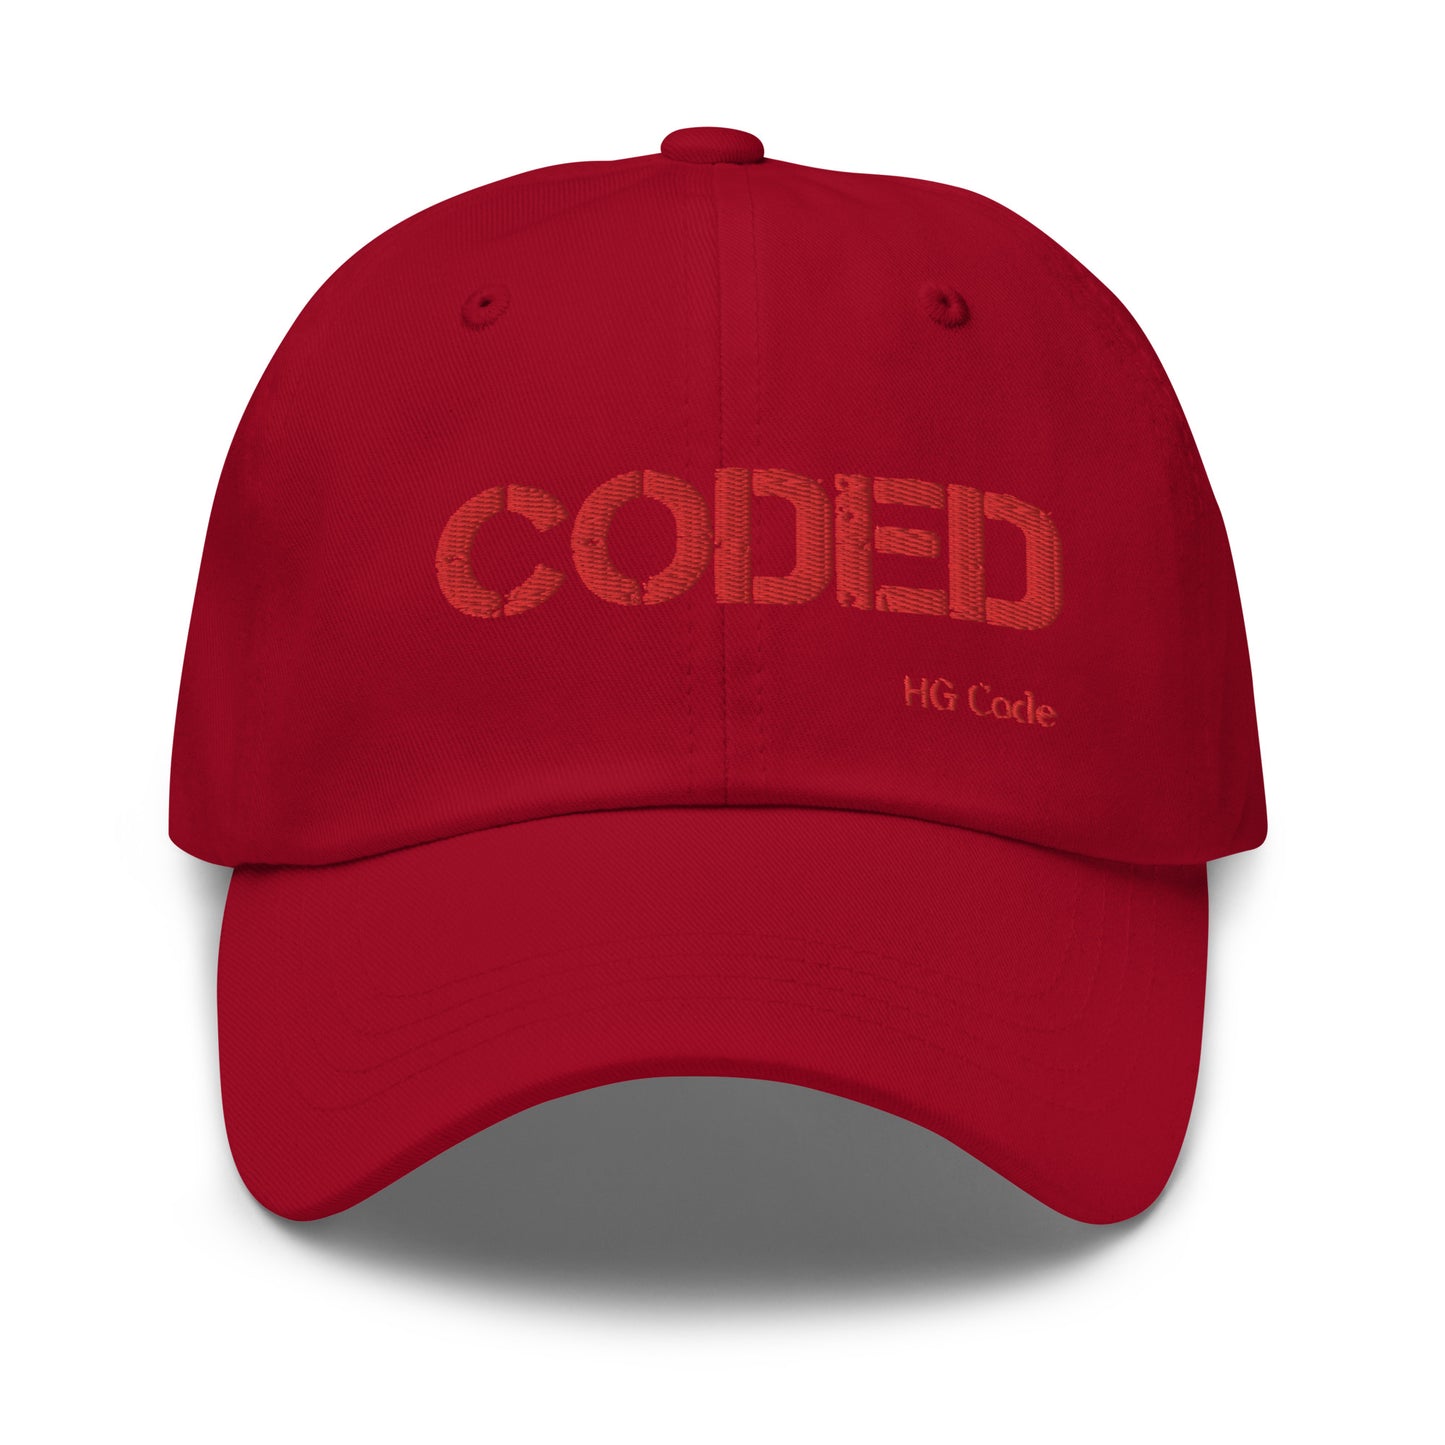 Coded Cap